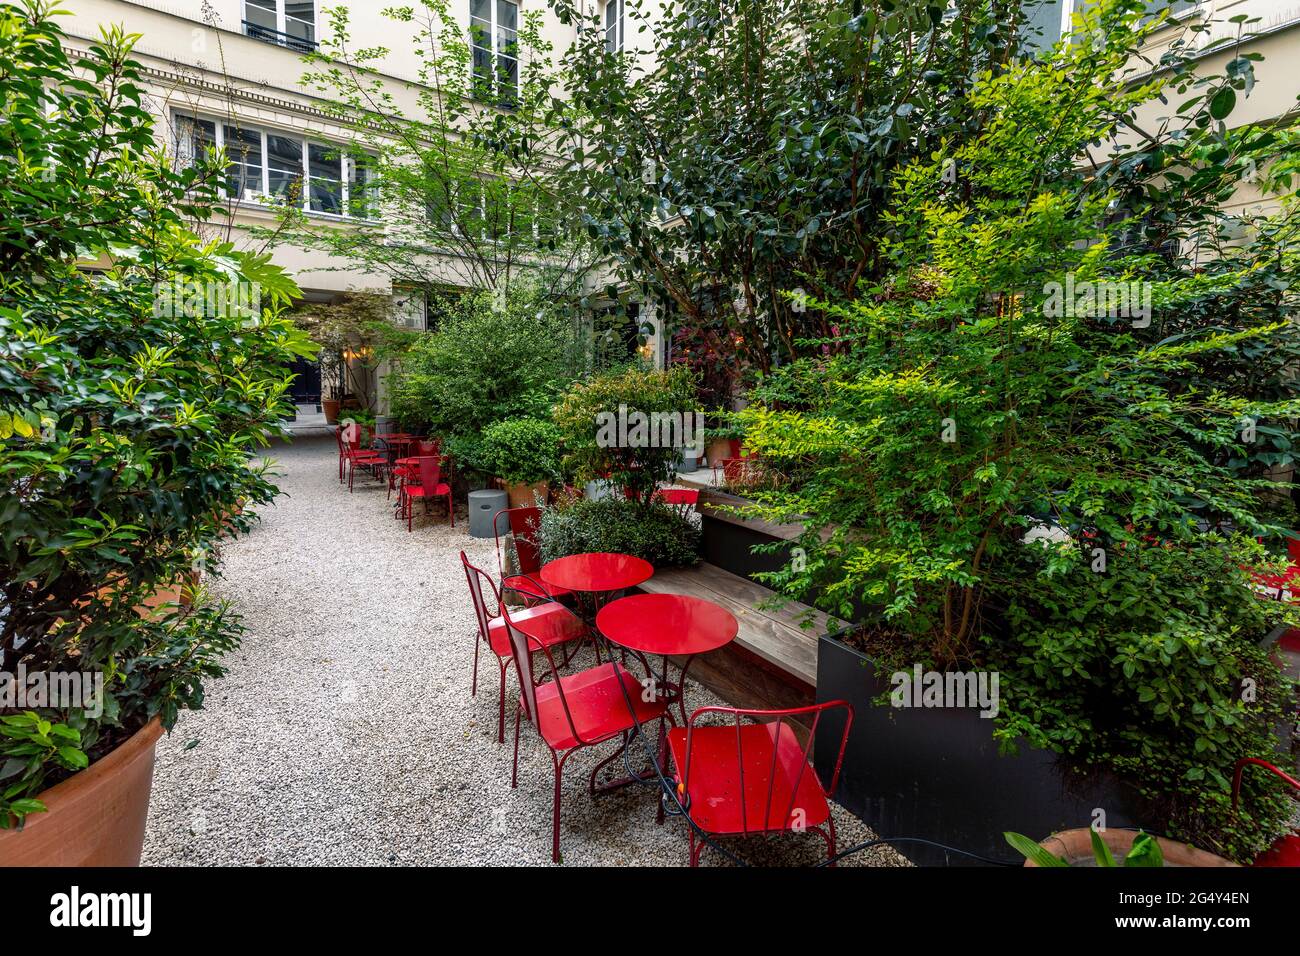 París, Francia - 15 de abril de 2021: La brasserie del restaurante está cerrada debido a la epidemia del coronavirus COVID19 en París. Bar vacío, sillas levantadas, no hay huéspedes. S Foto de stock